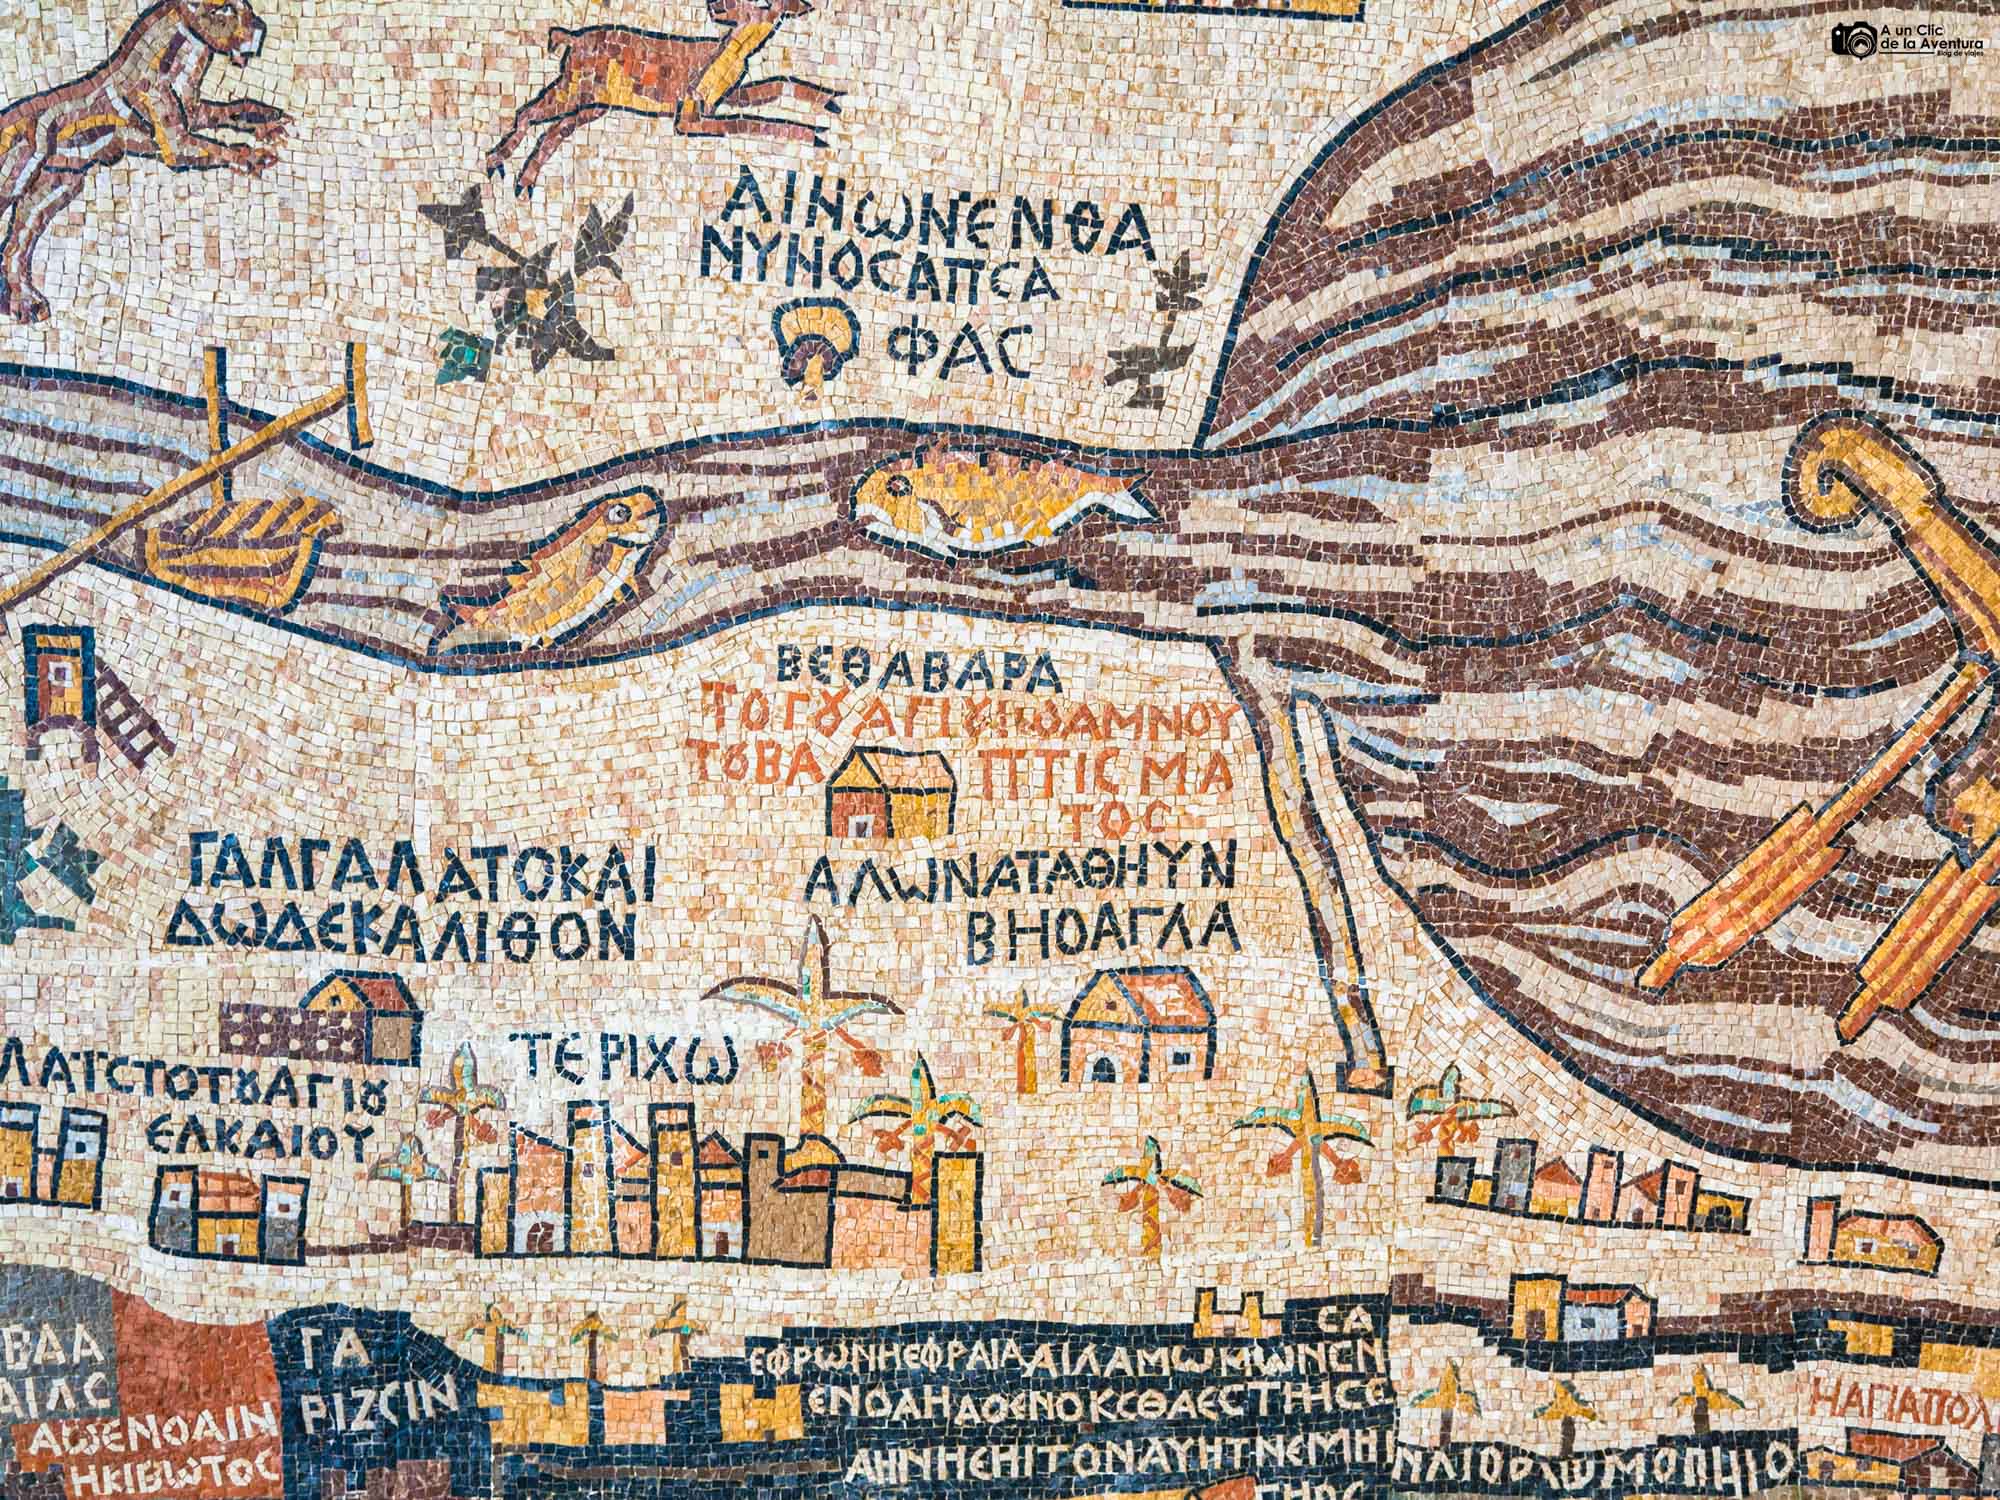 Mosaico del mapa de Tierra Santa en Madaba, que ver en Jordania